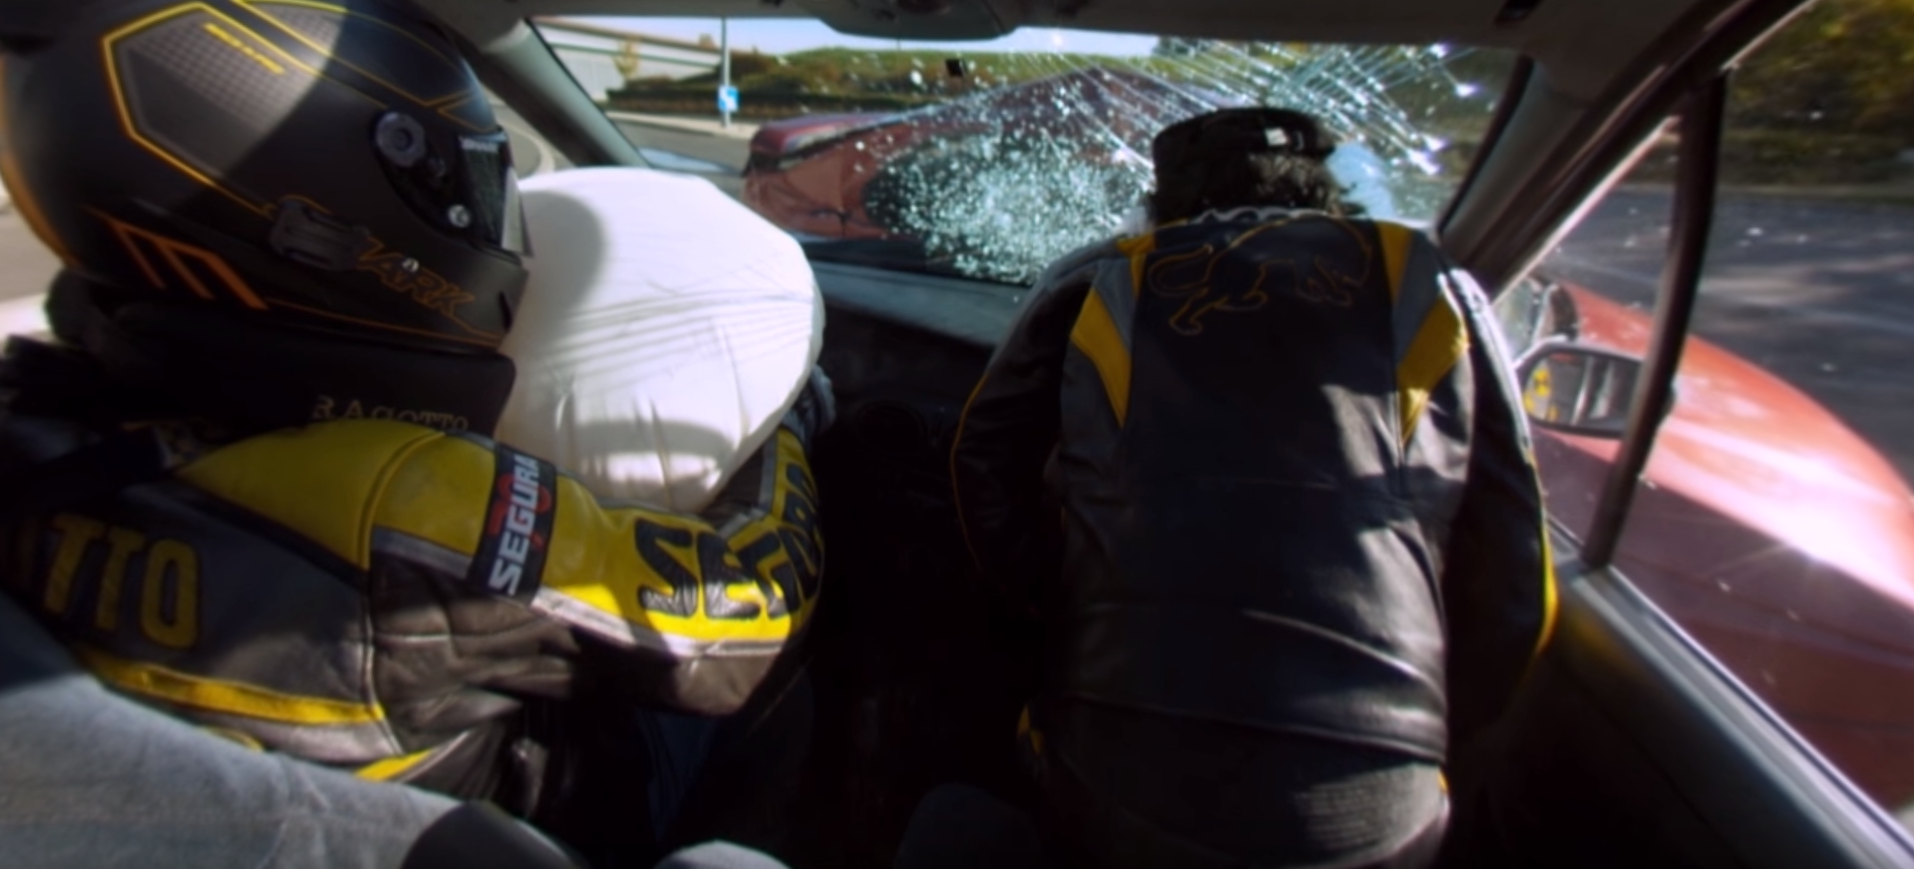 Vidéo à 360° d’un accident routier